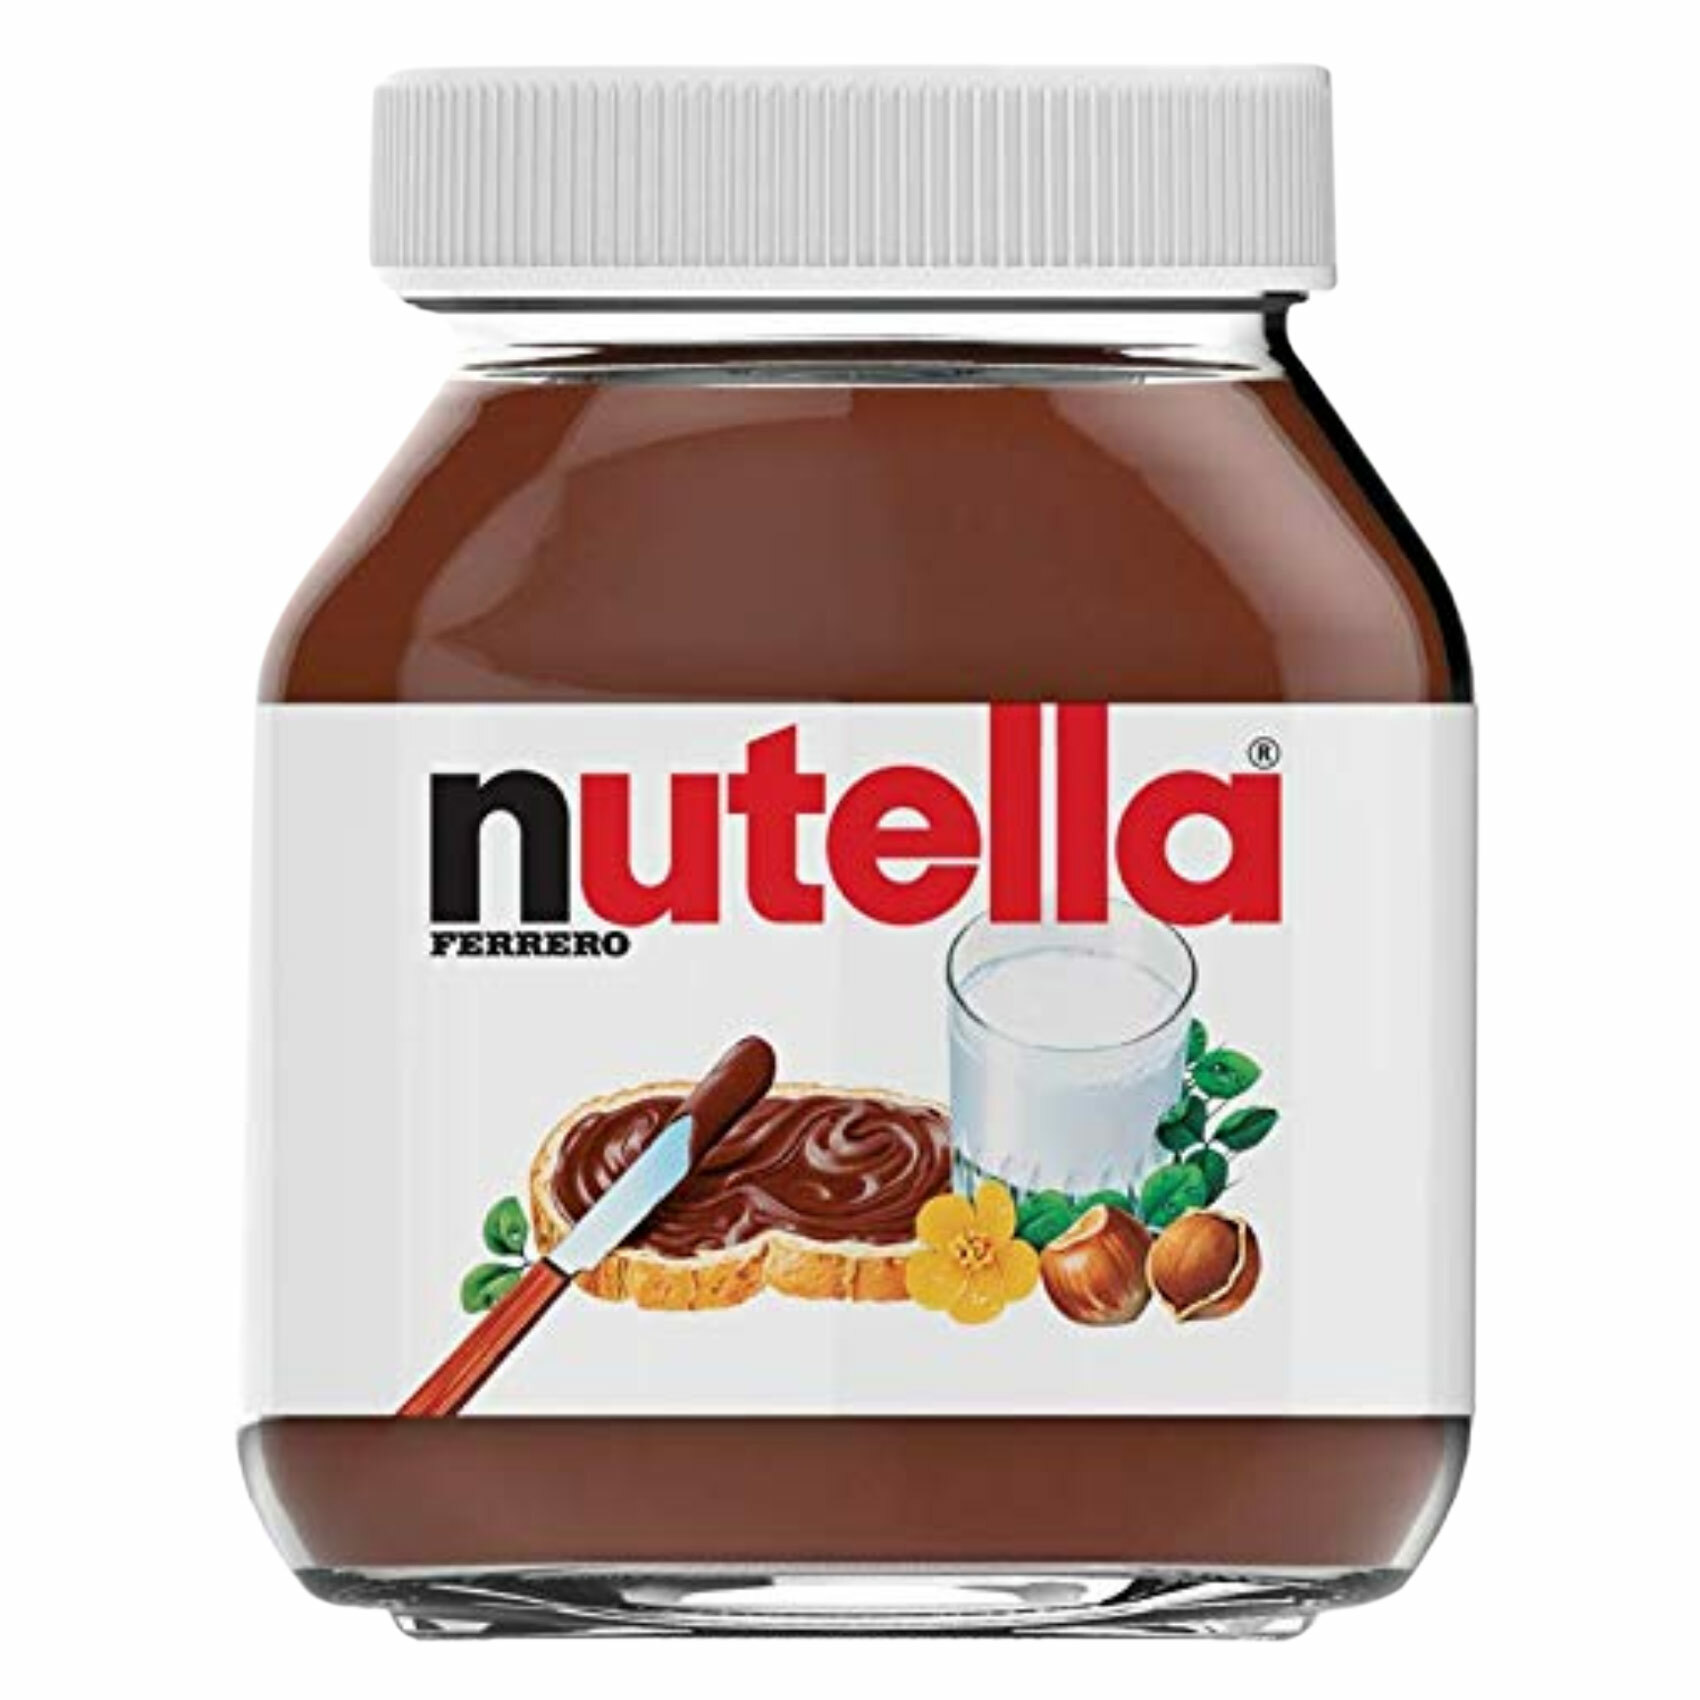 Buy Nutella Ferrero Hazelnut Chocolate Spread 750g Online Shop Food Cupboard On Carrefour Uae